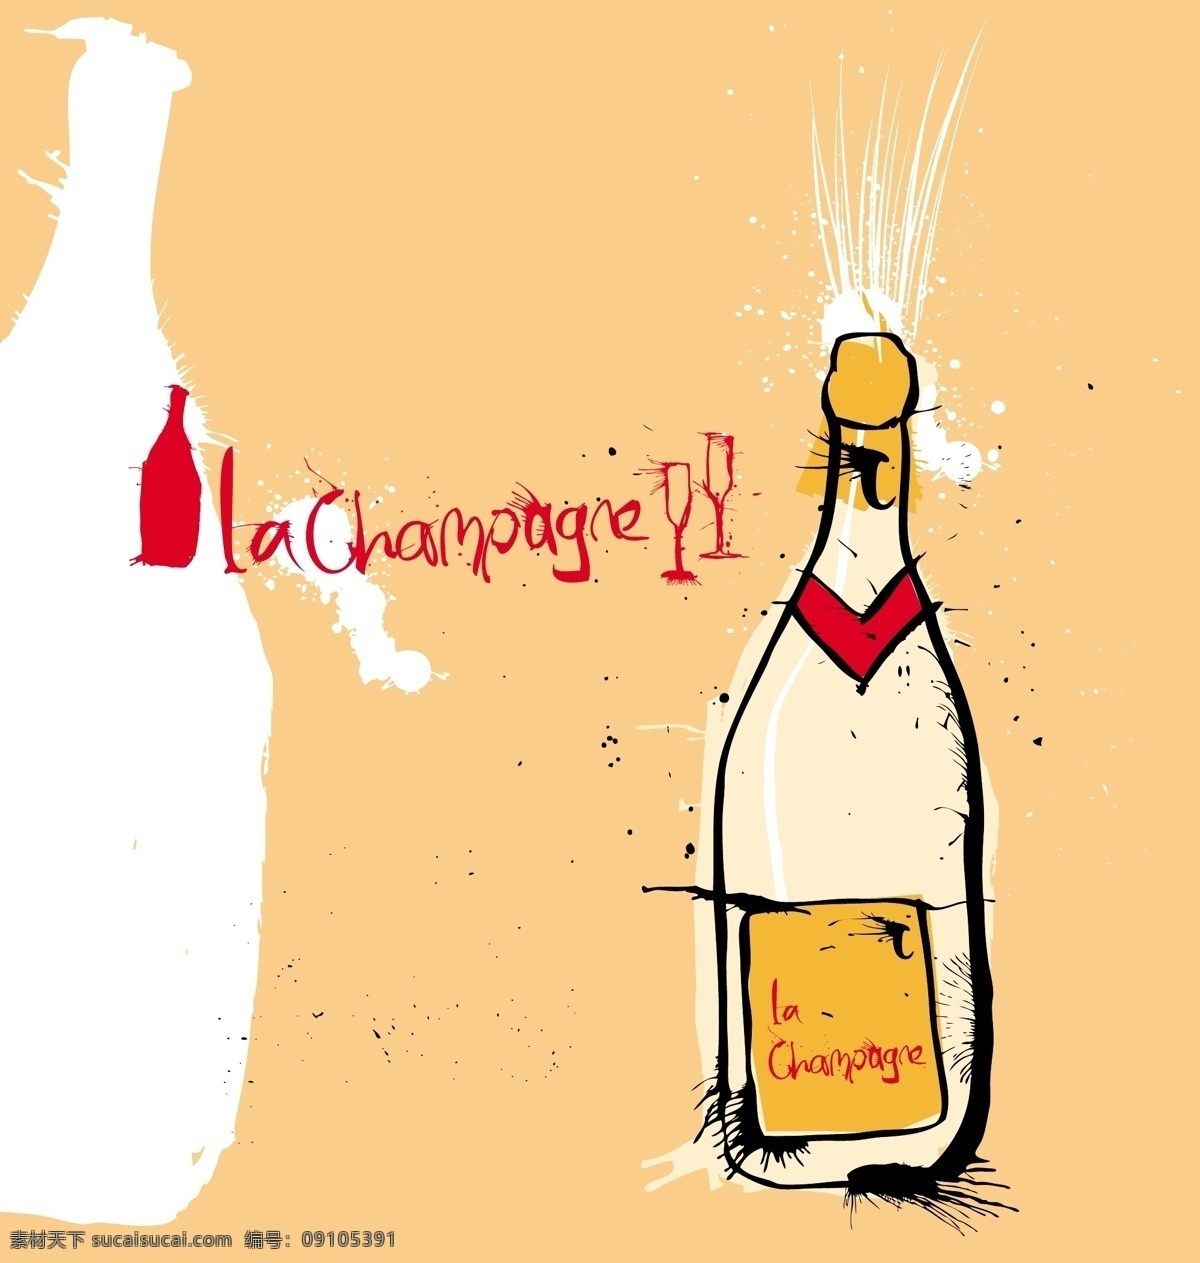 彩绘 香槟酒 矢量 插画 酒瓶 漫画 葡萄酒 矢量图 涂鸦 香槟 日常生活